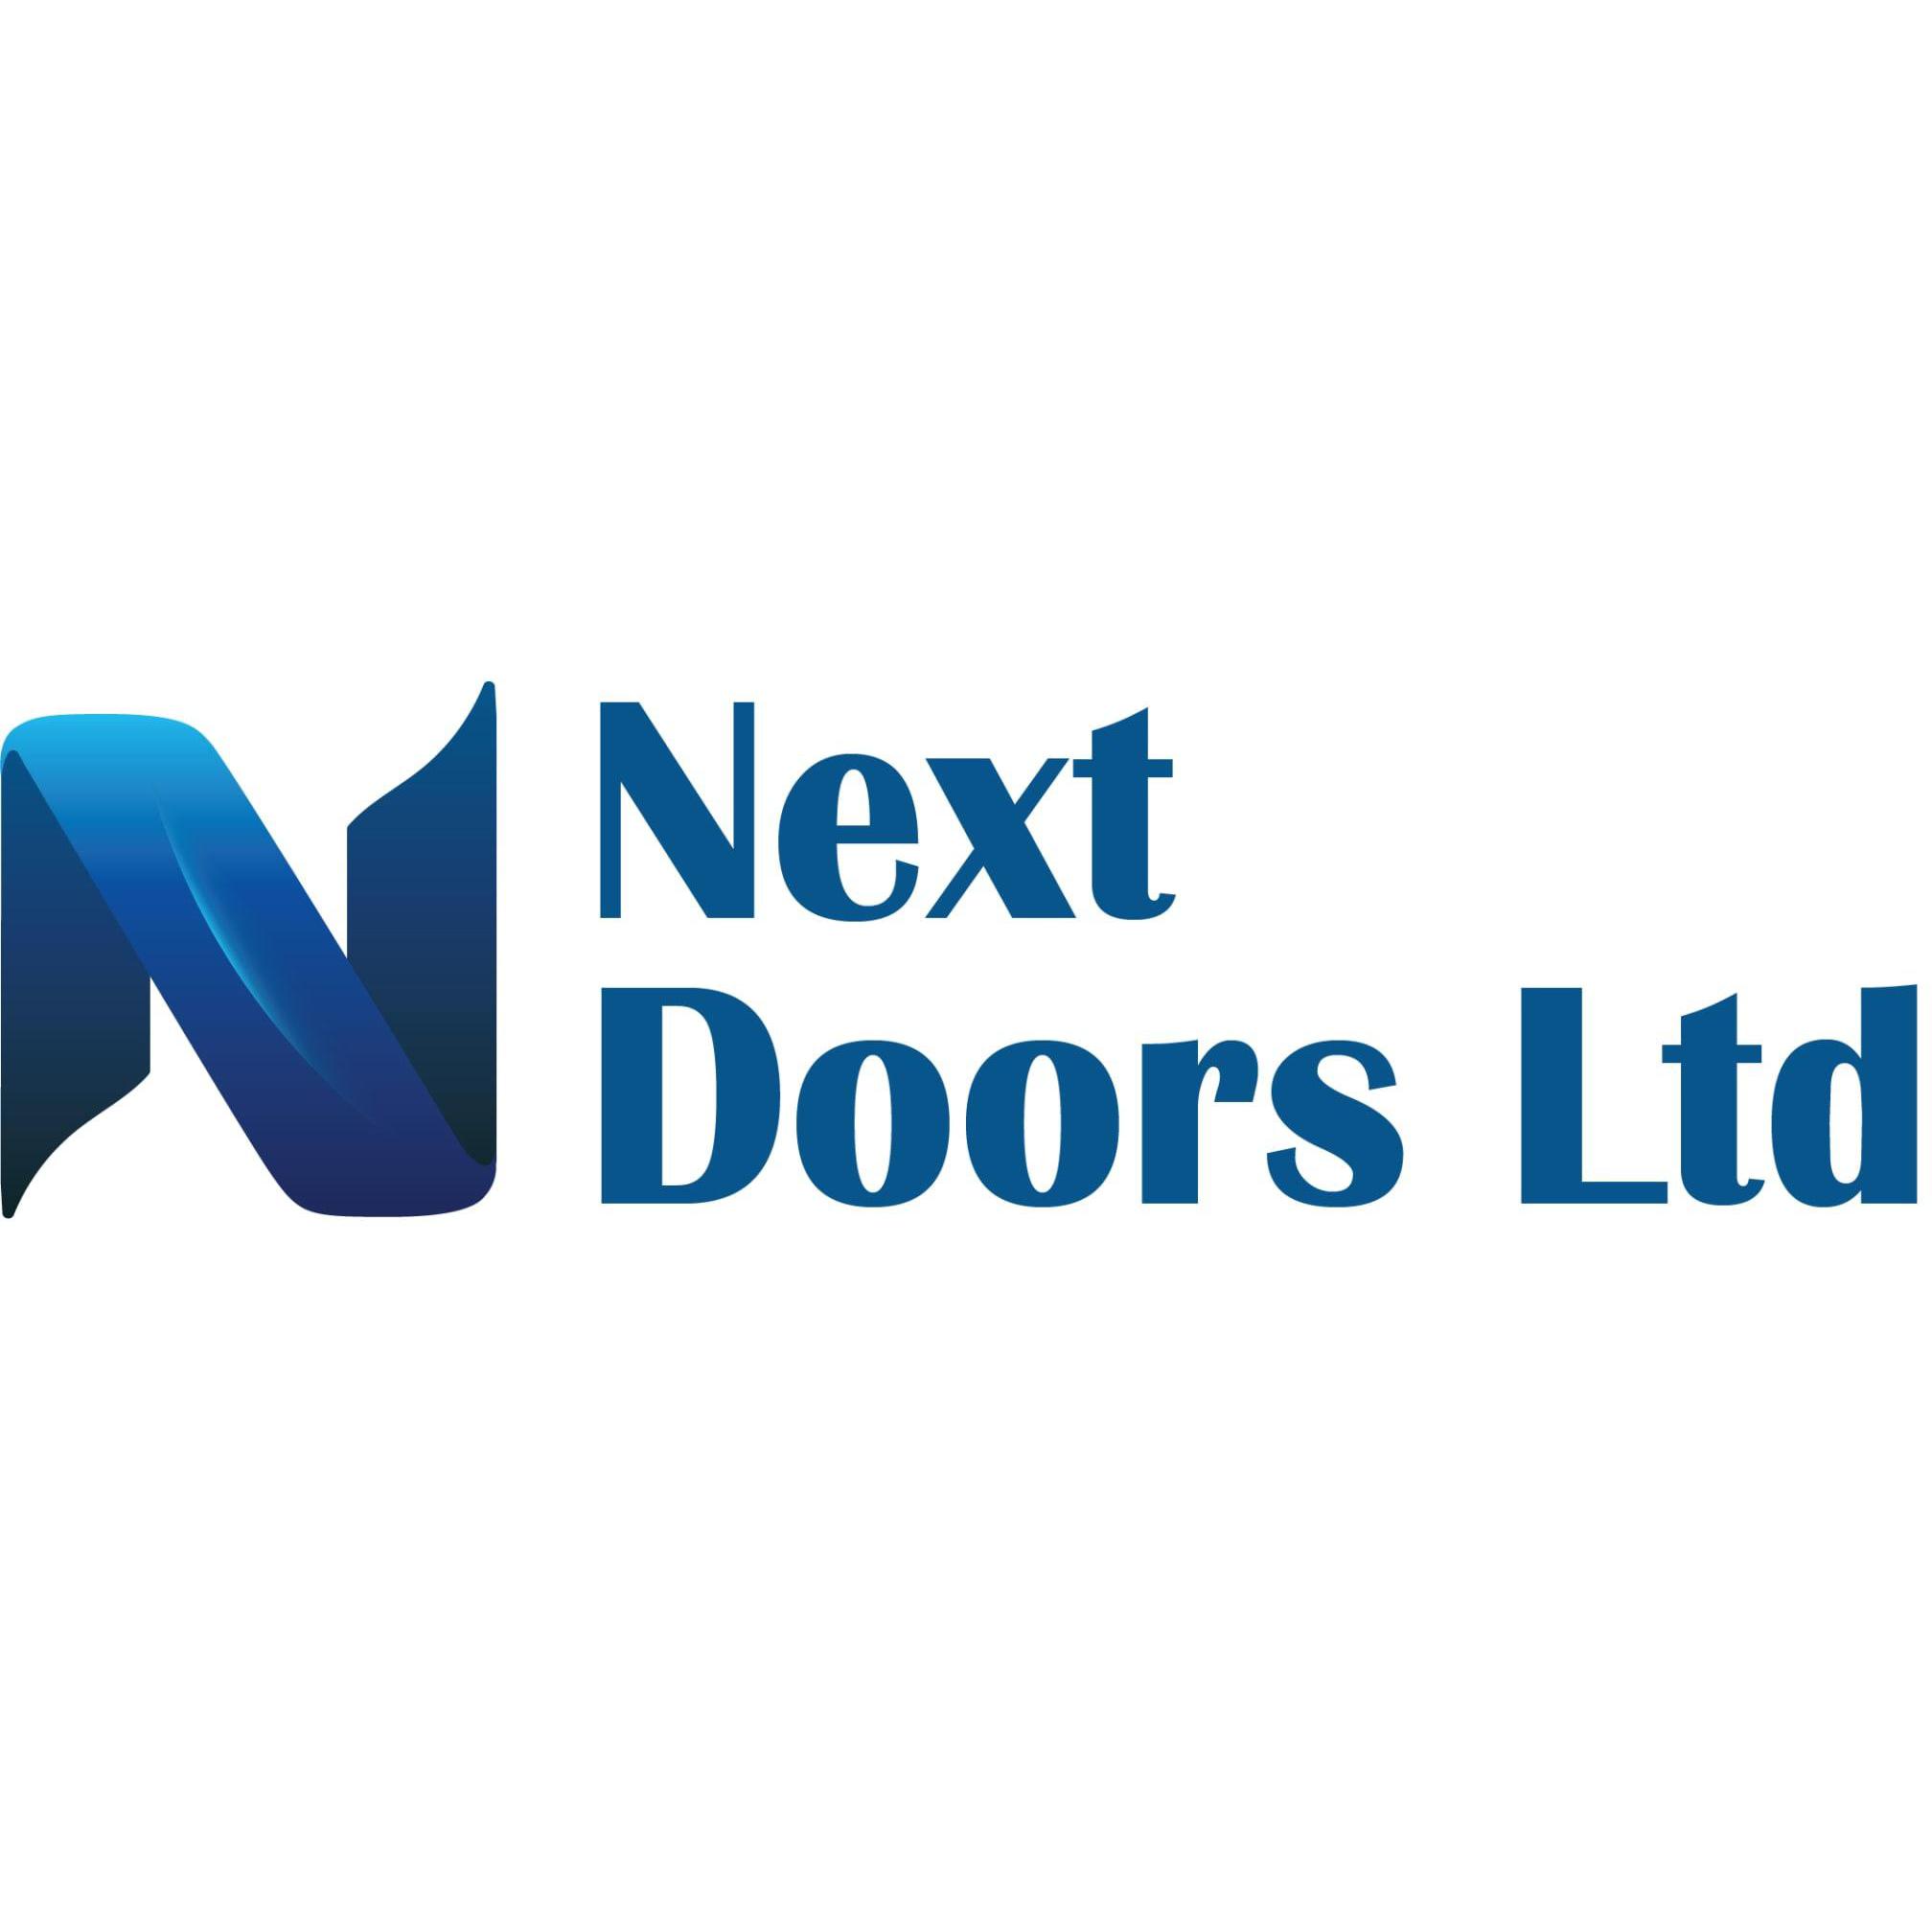 Next Doors Ltd - Swanley, Kent BR8 7QD - 08435 231063 | ShowMeLocal.com